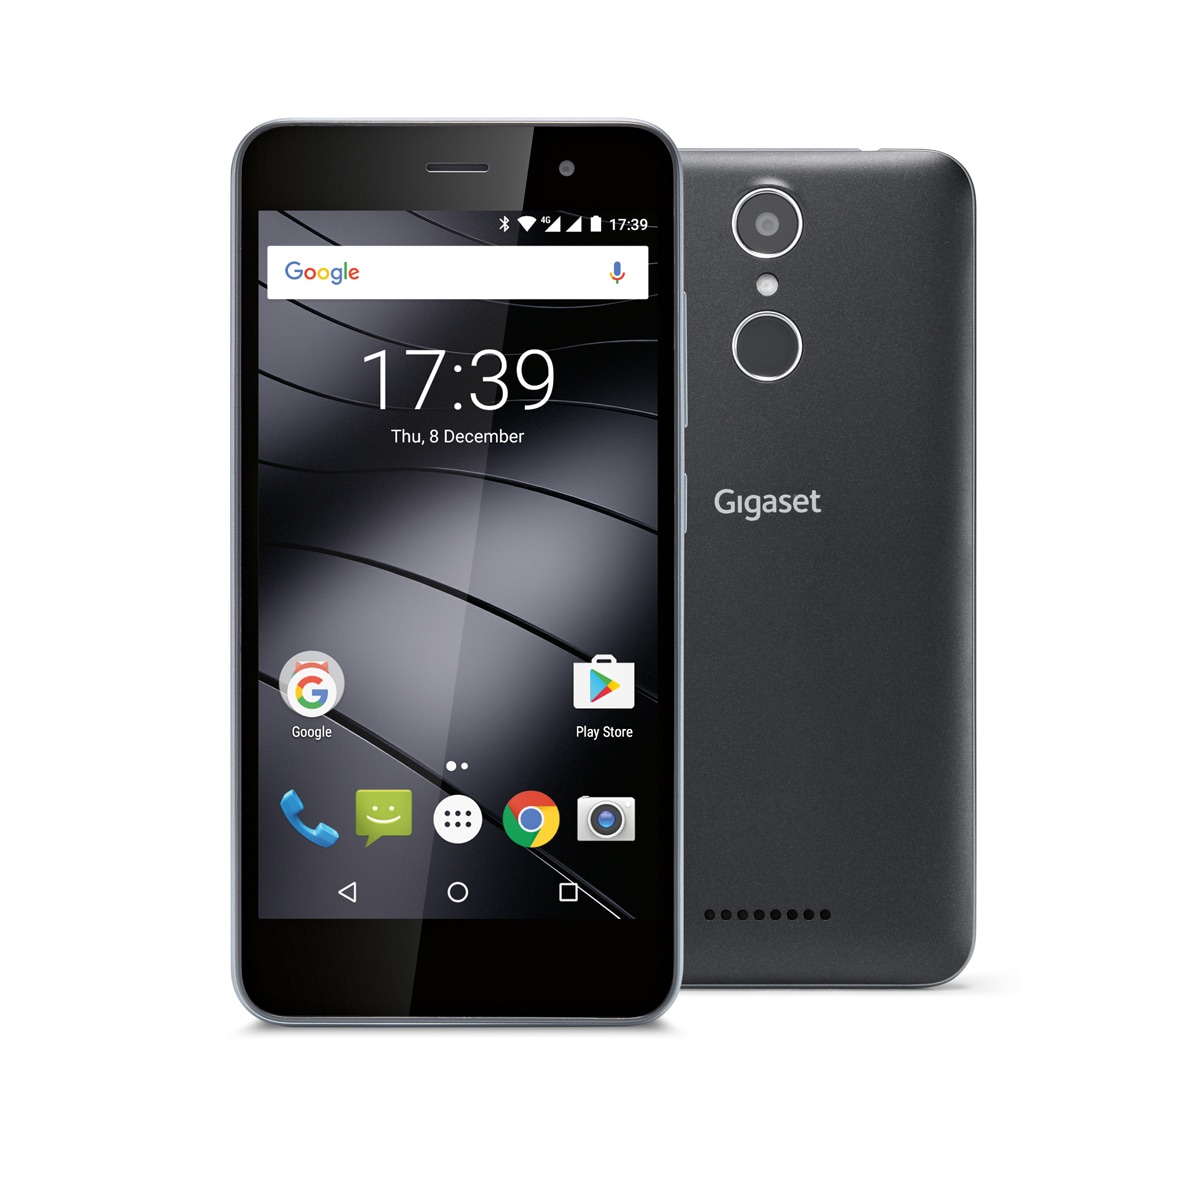 Gigaset lanza un nuevo teléfono inteligente Android en Italia: aquí está Gigaset GS160 (foto)